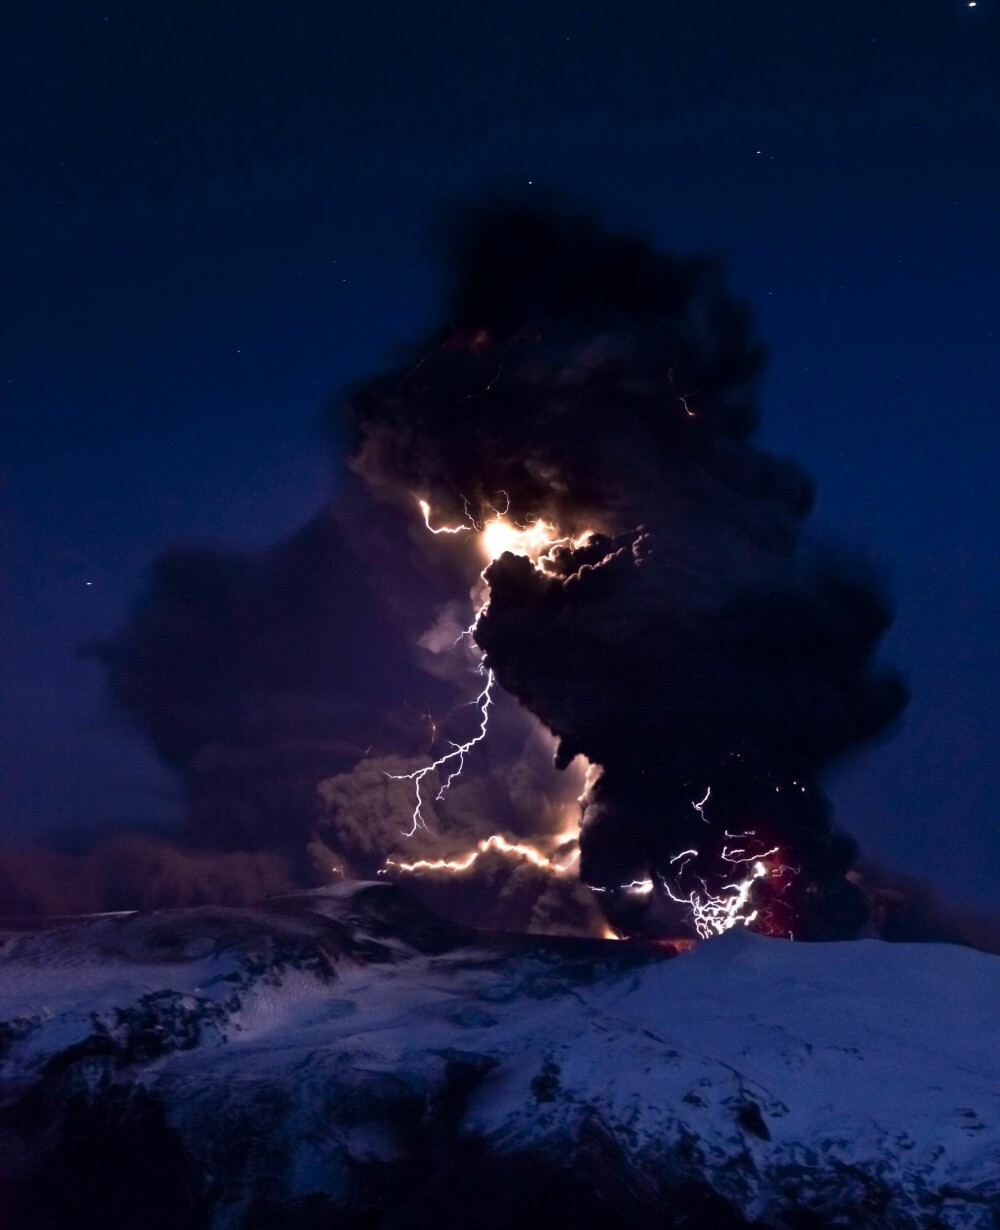 <b>VULKANLYN:</b> Man bør selvfølgelig reise til vulkanøya Island for å oppleve noe så fenomenalt som vulkanlyn. Dette bildet er tatt ved den meget aktive vulkanen Eyjafjallajökull. Vulkanlyn er elektriske utladninger forårsaket av vulkanutbrudd. De har ingen elektrisk ladning og kan derfor ikke generere lyn på egen hånd. Det hører med til historien at ikke alle vulkaner kan produsere vulkanlyn. Det kreves visse eksplosive egen­skaper.